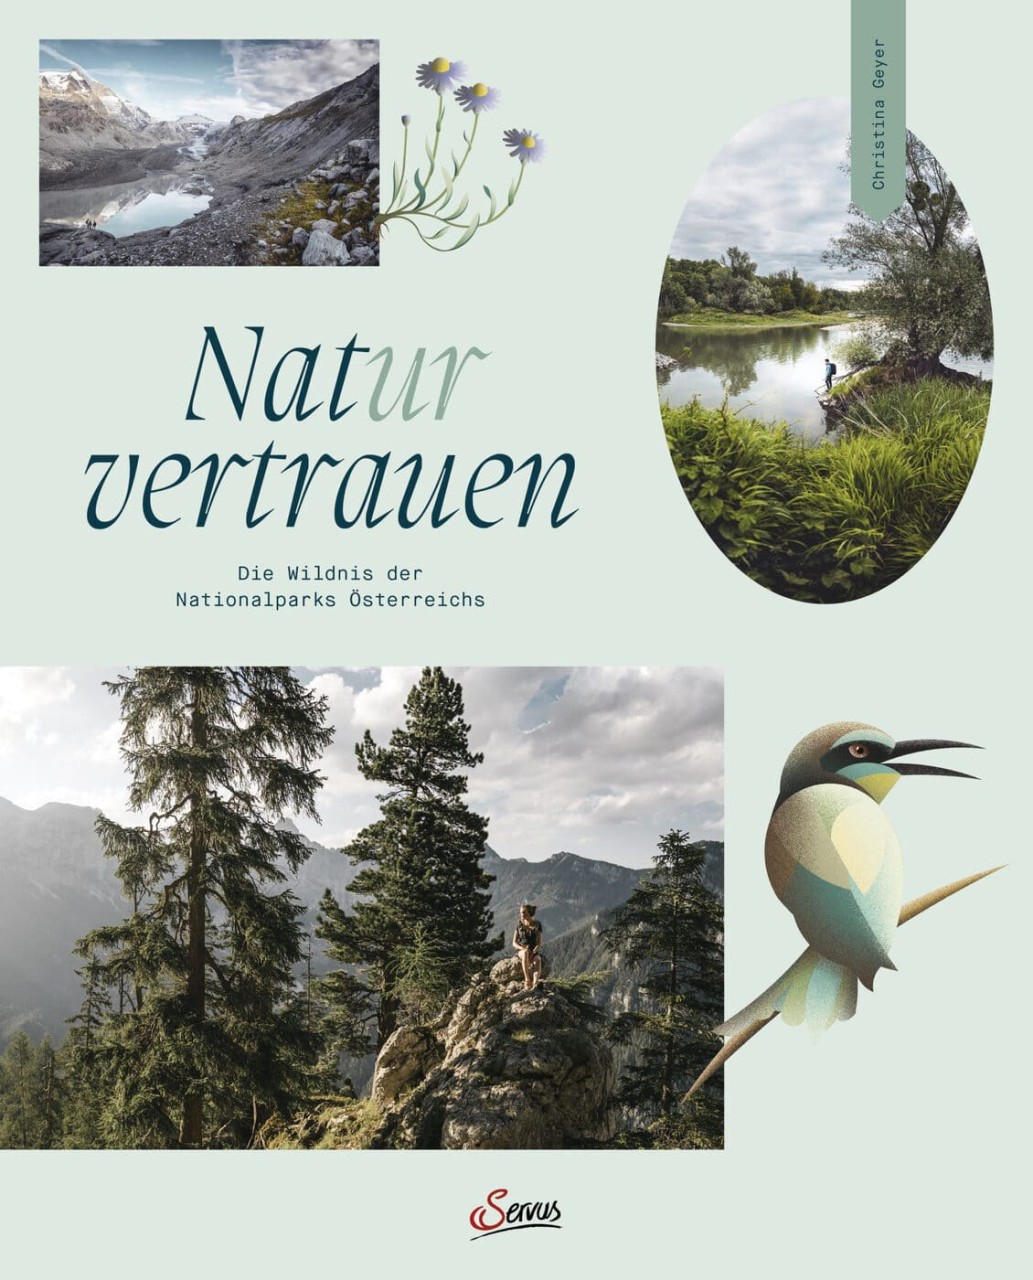 Naturvertrauen von Servus Verlag